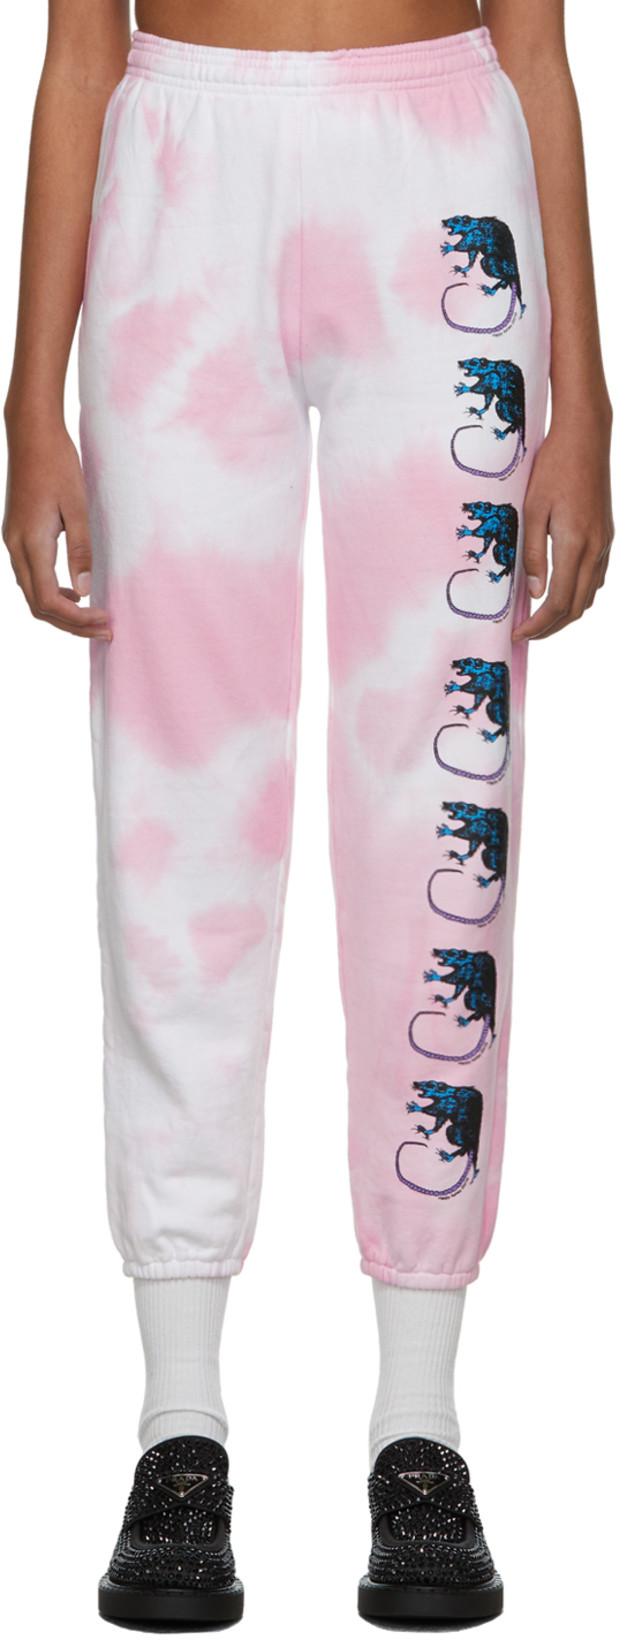 Pink Tie-Dye Rat Lounge Pants by ASHLEY WILLIAMS